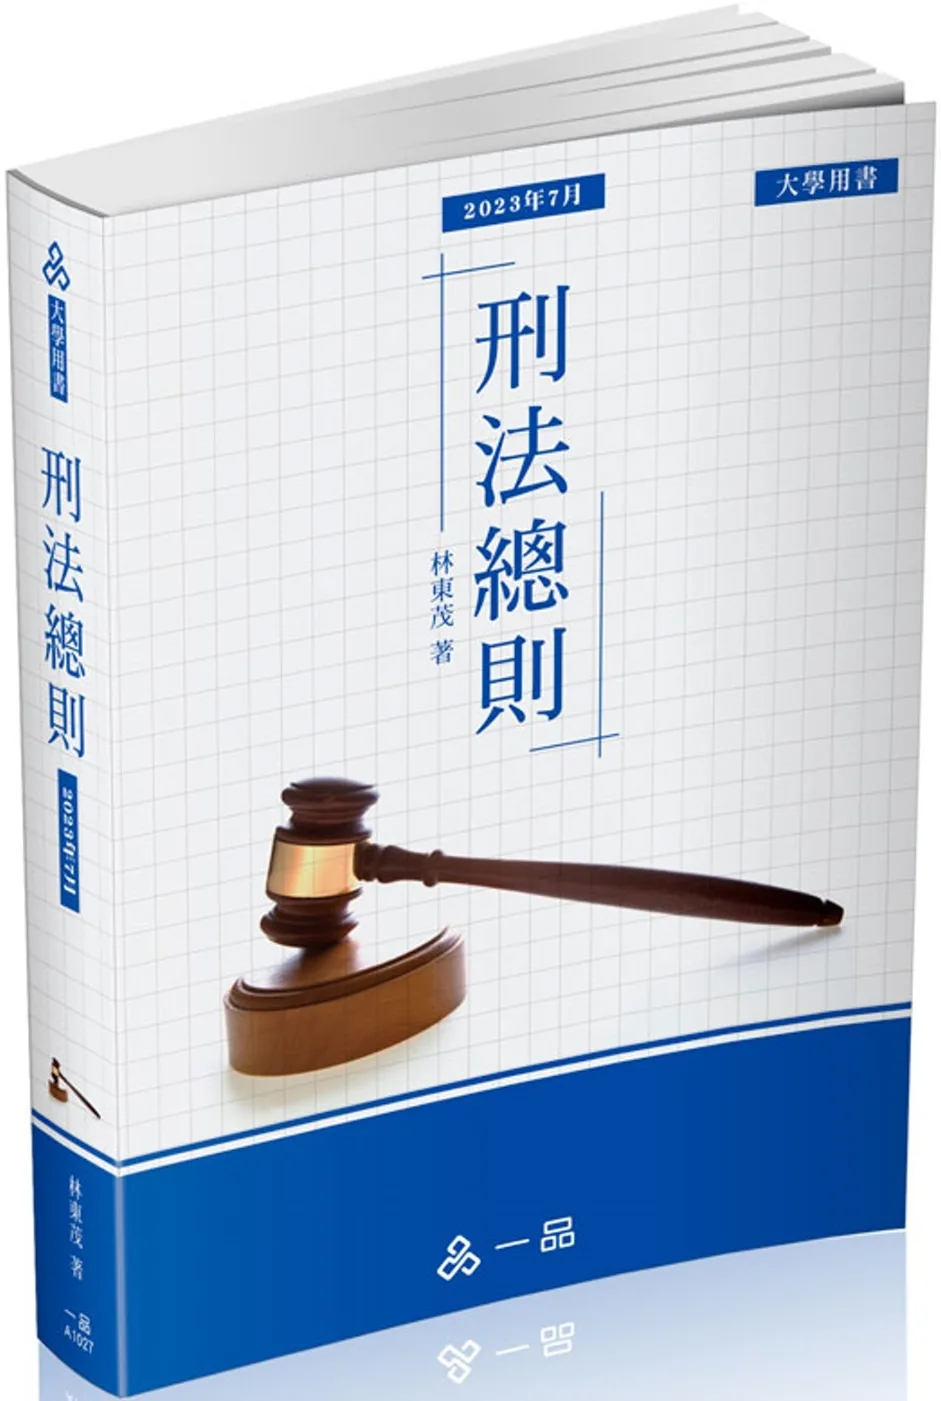 A1027-刑法總則-大學用書系列(經銷書)(一品)